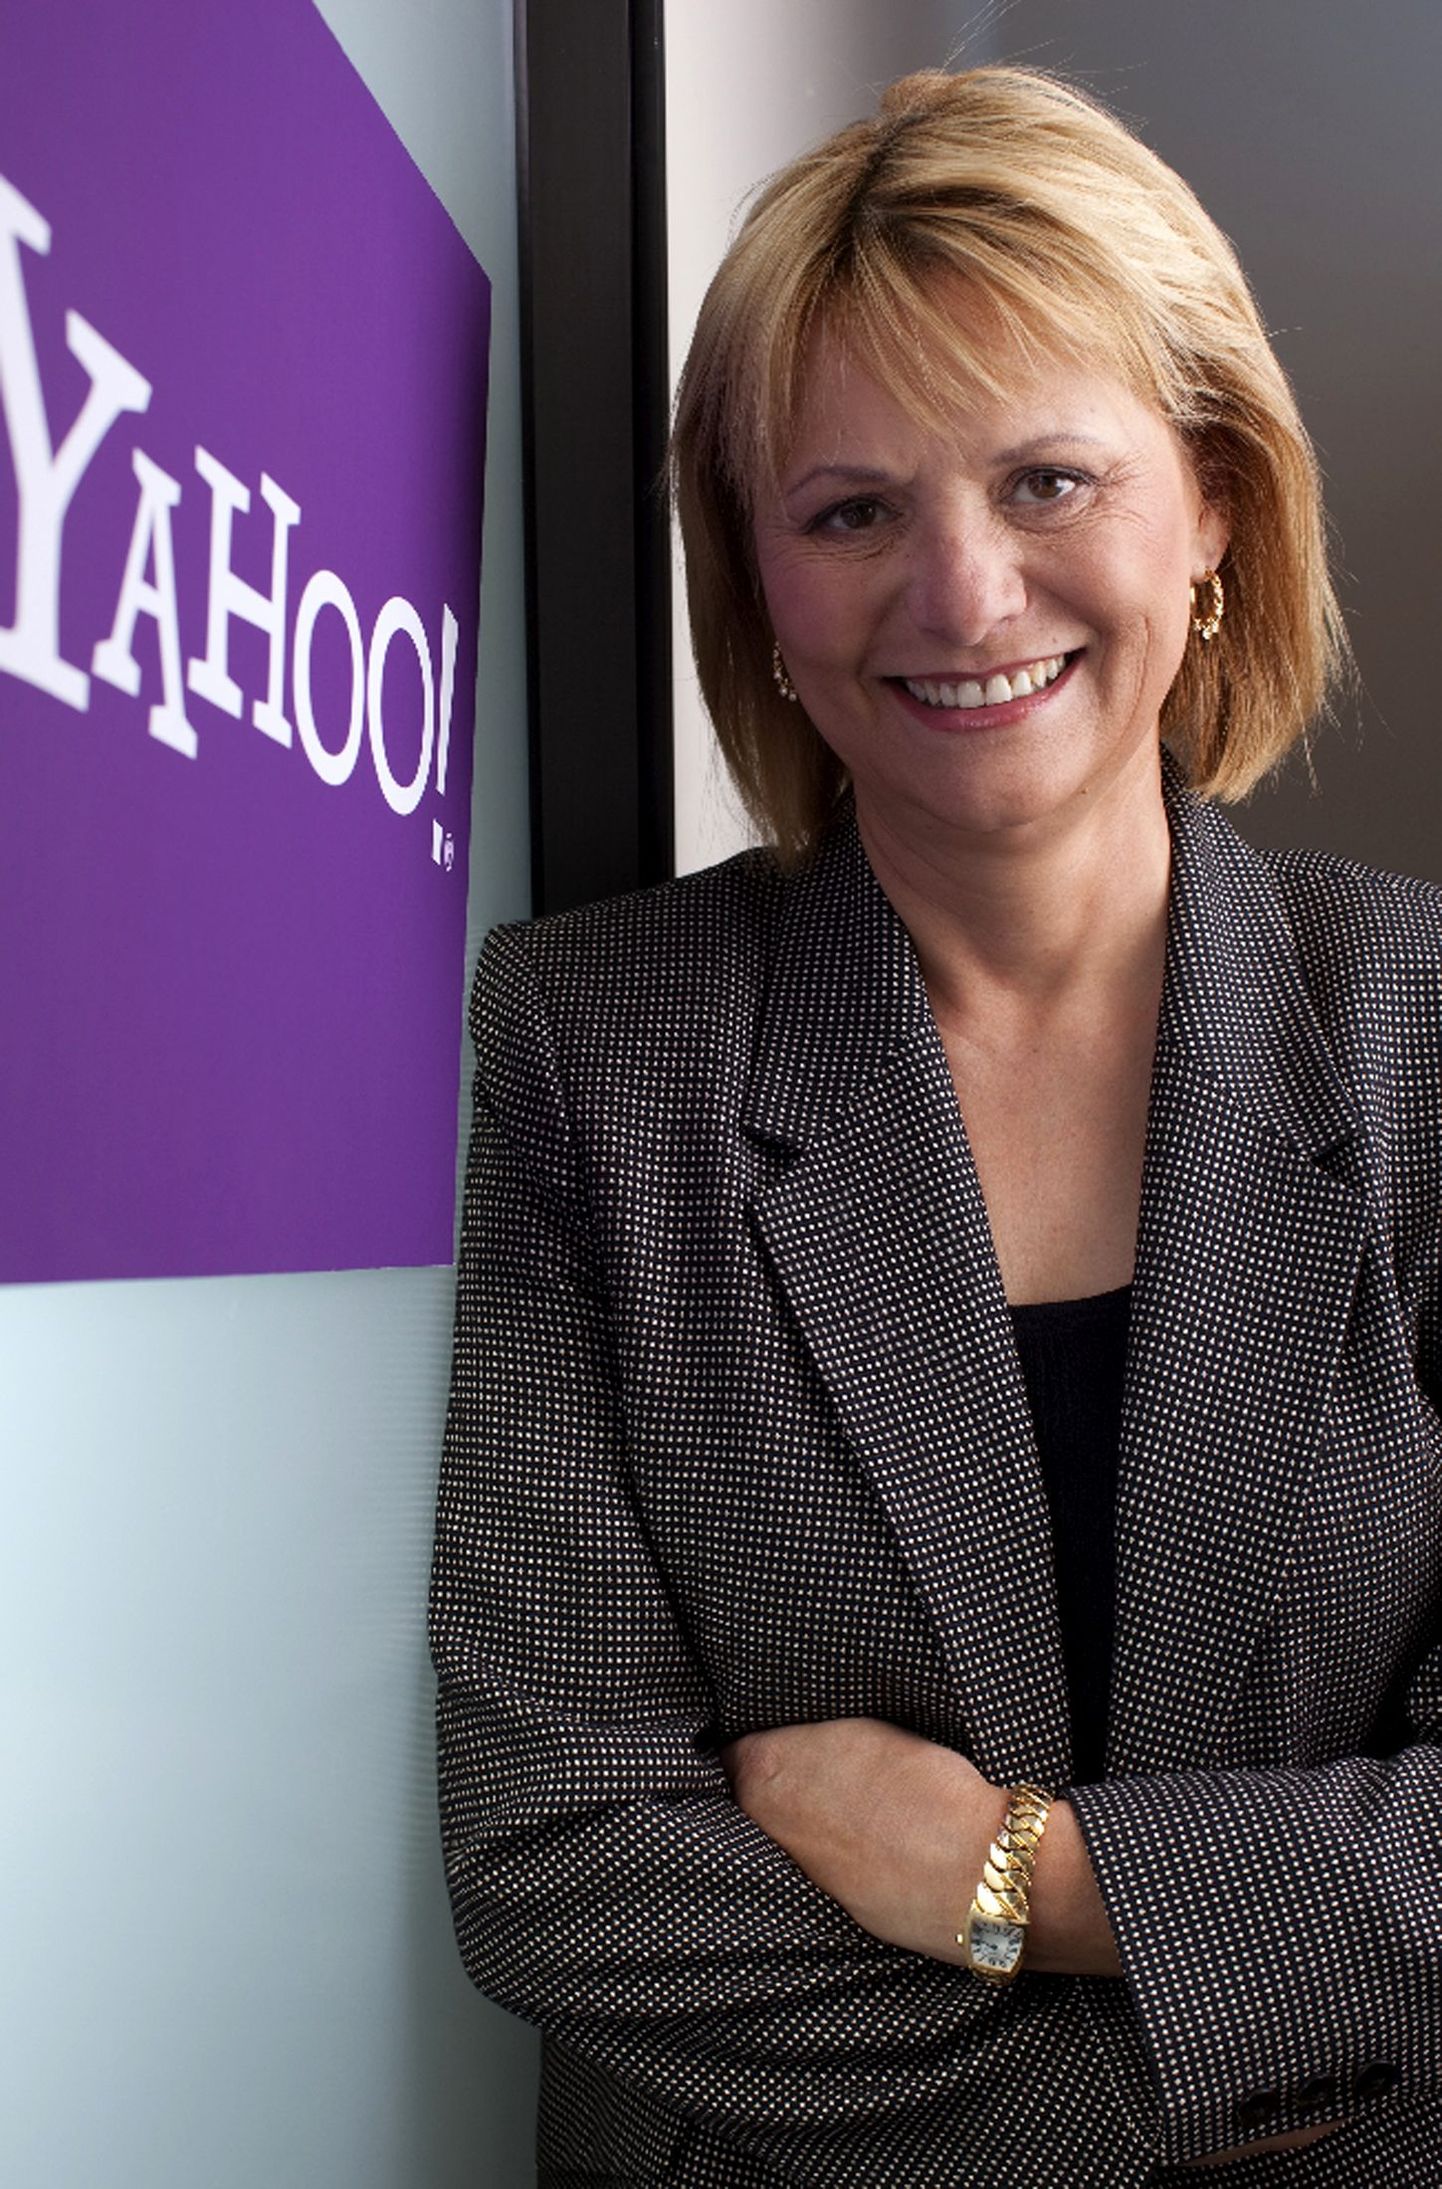 Internetifirma Yahoo juht Carol Bartz kuulub oma teenistuselt USA naiste tippu.